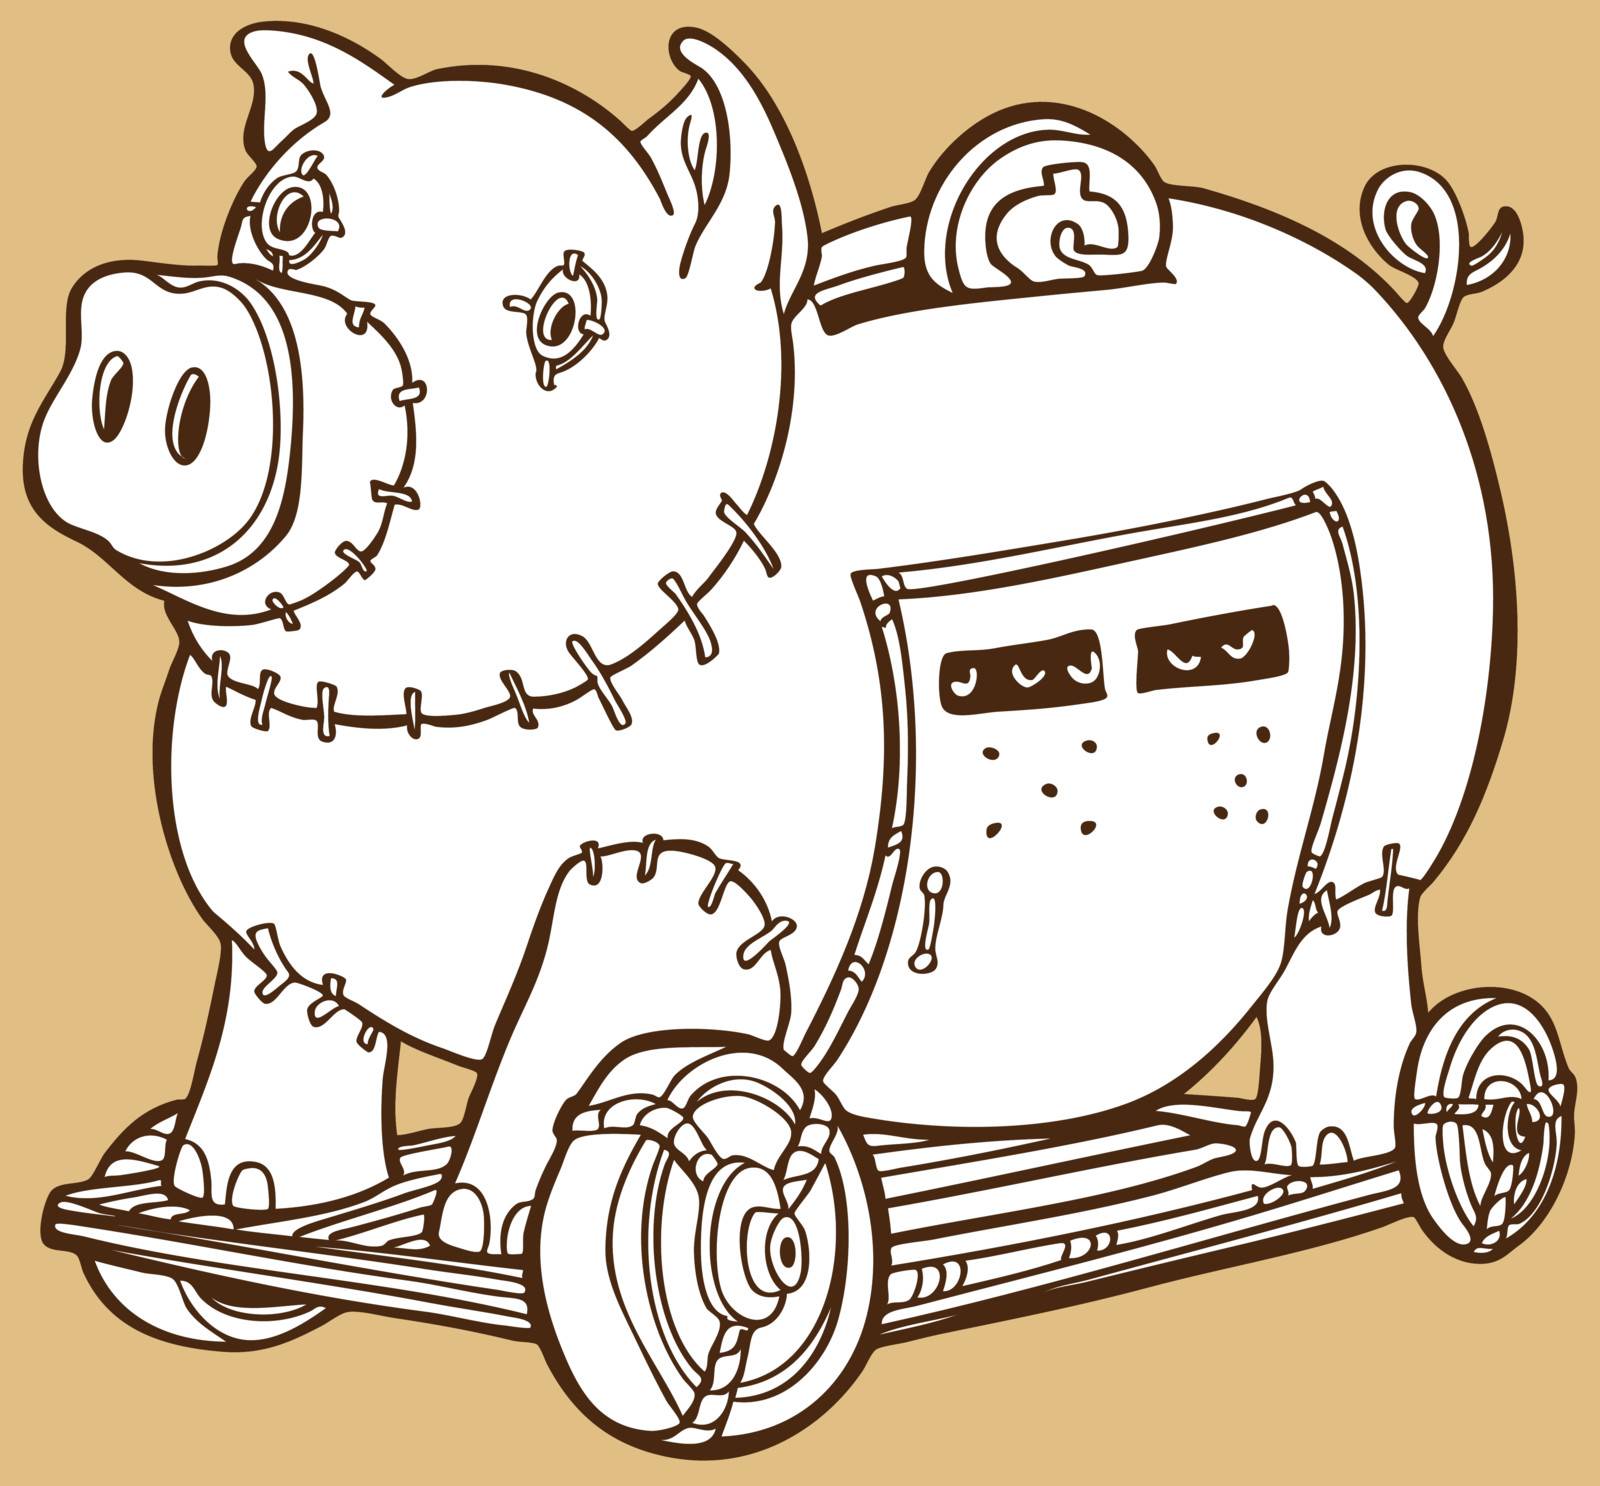 An image of a trojan horse piggy bank.